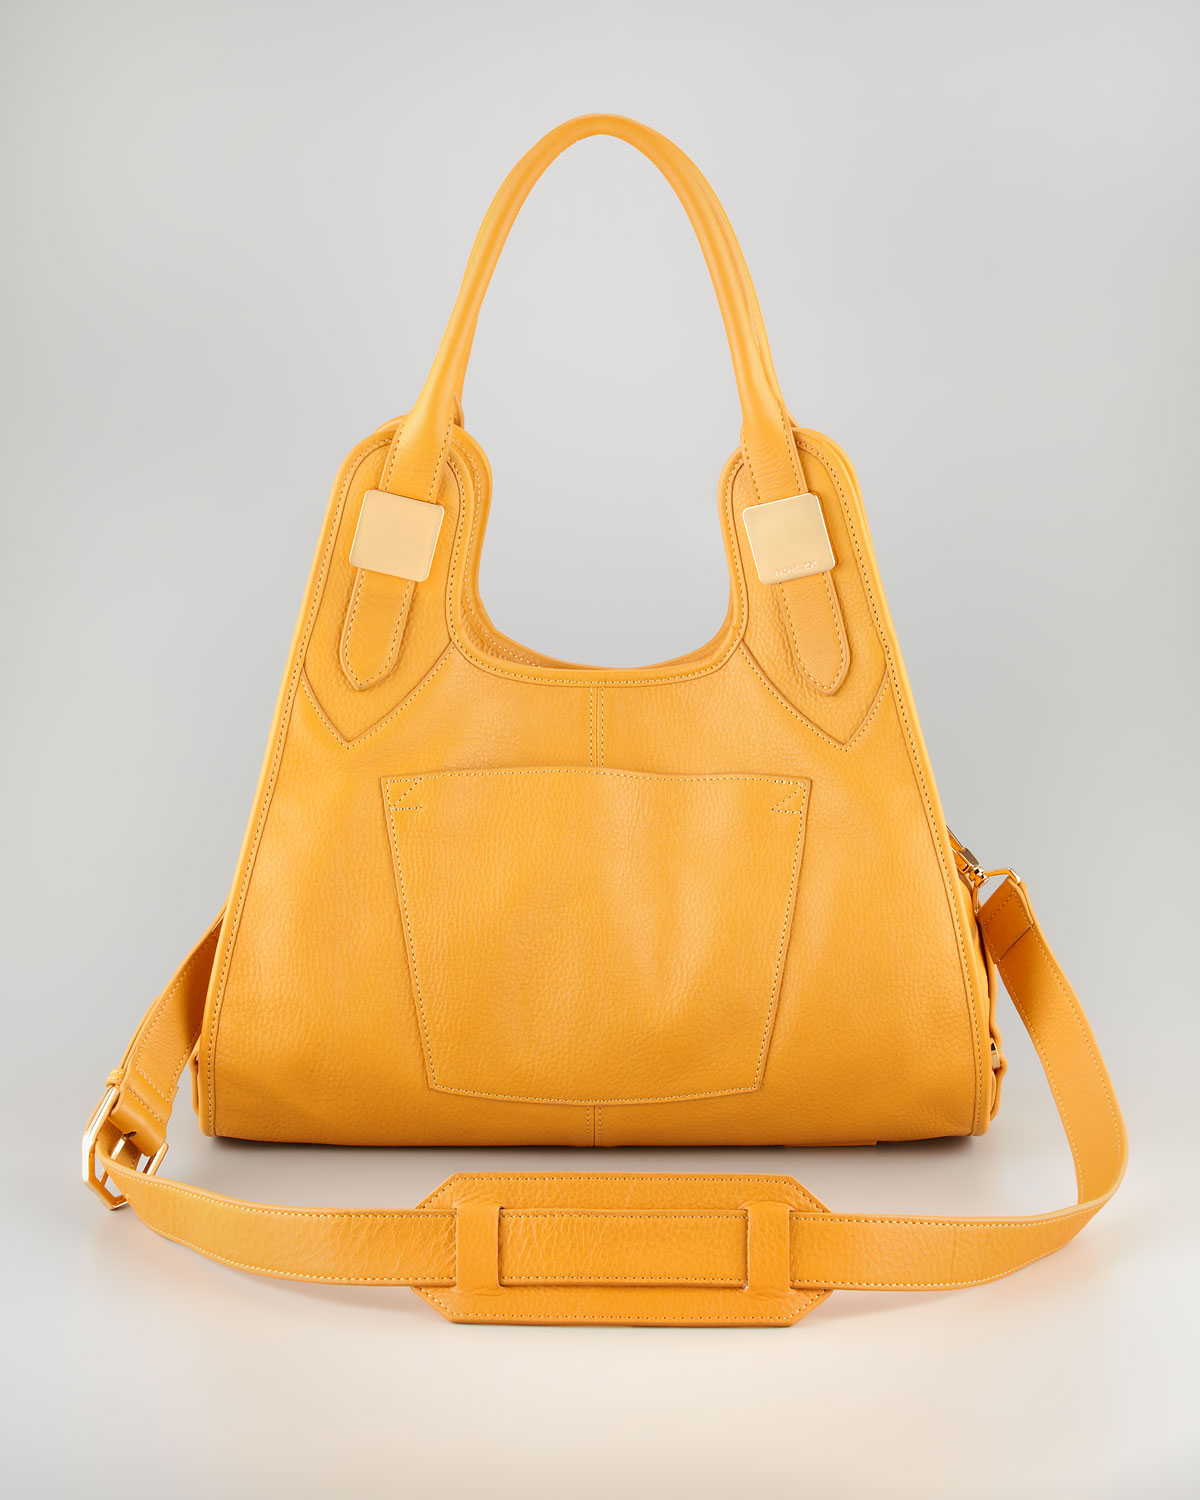 Rachel zoe Lucas Small Leather Hobo Bag in Orange (maize) | Lyst